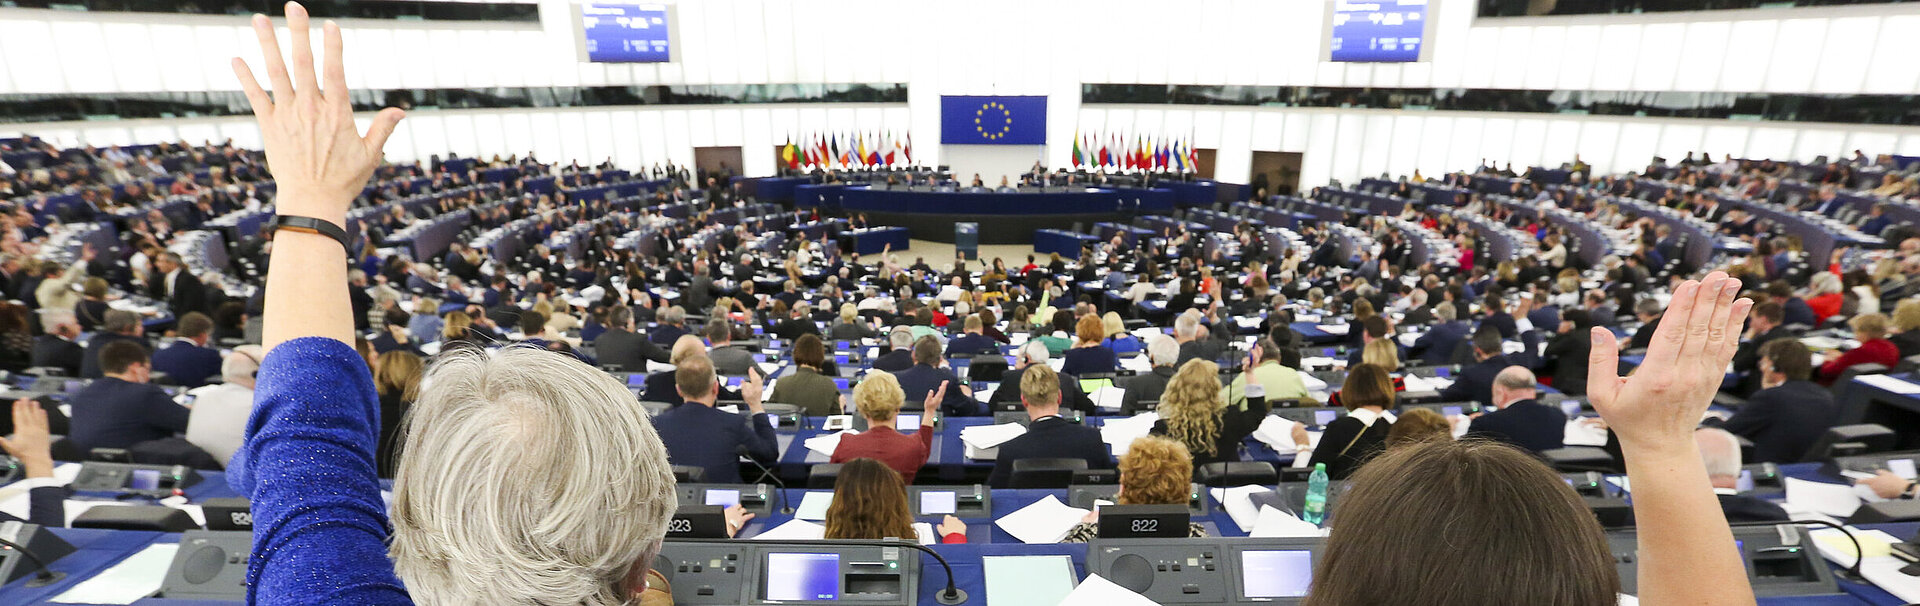 Europäisches Parlament, Foto: Europäische Union 2019 / Fred Marvaux, Quelle: Europäisches Parlament